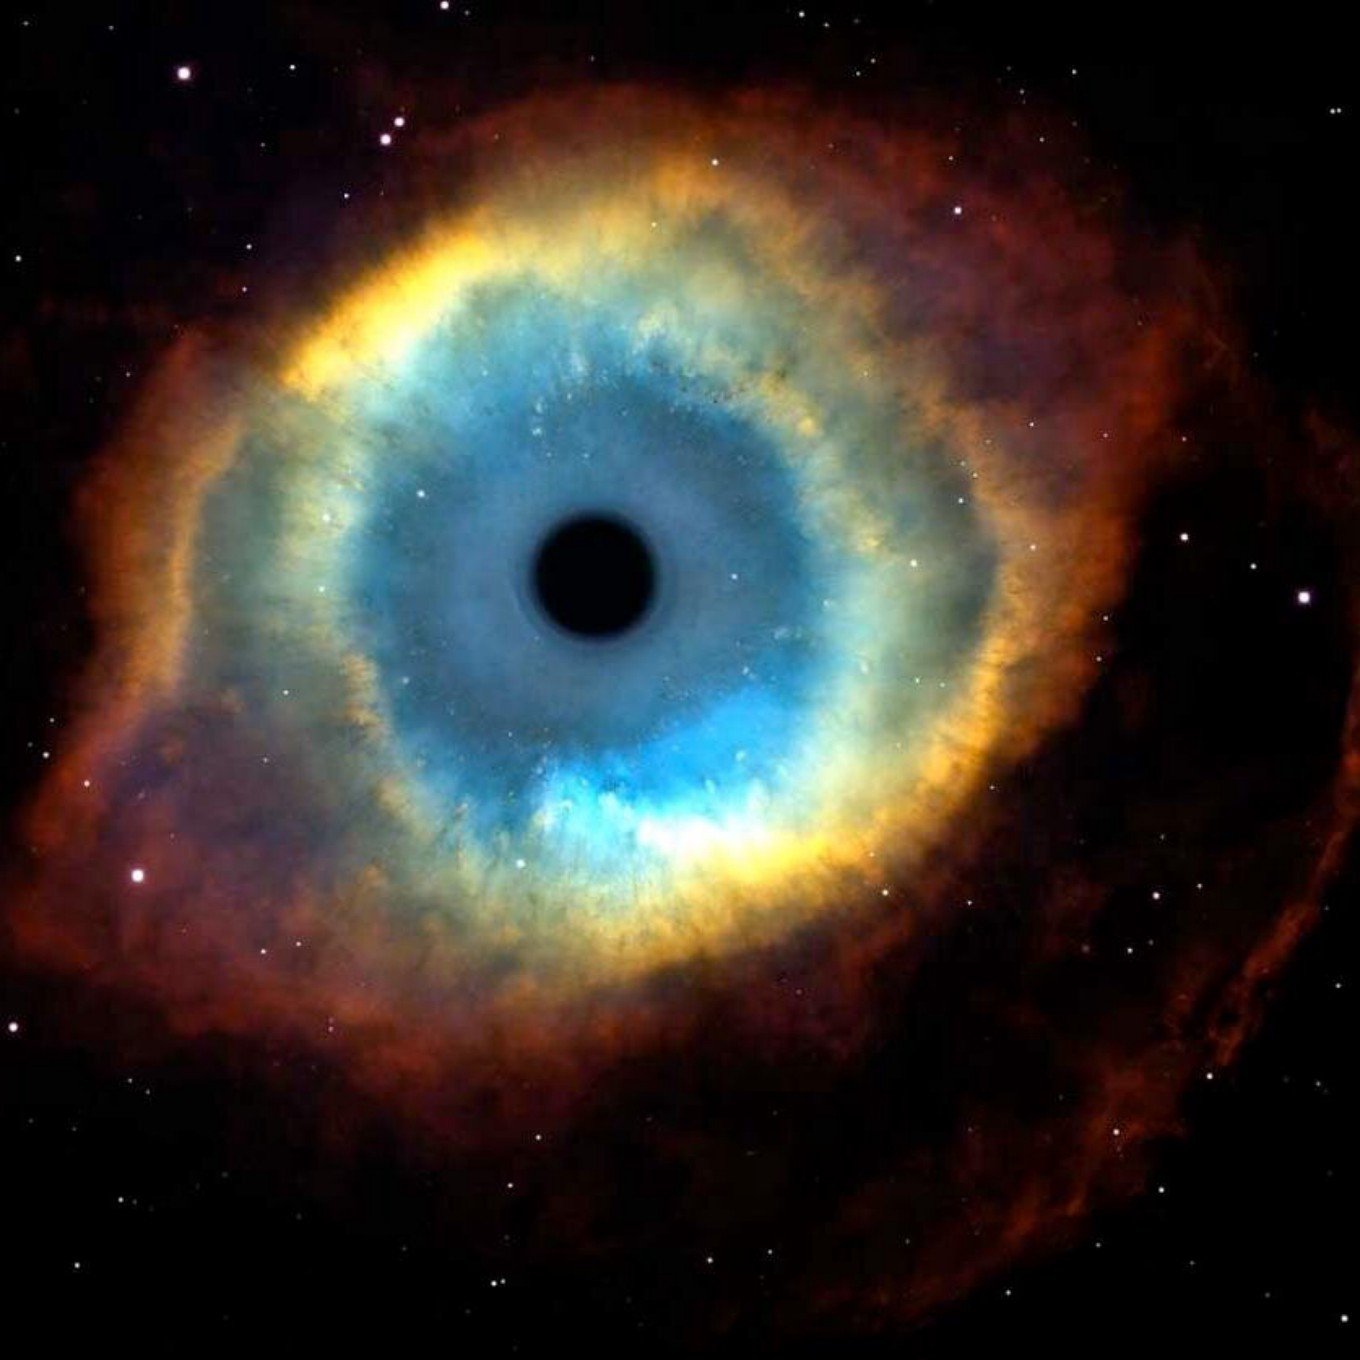 Глаз бога рабочая ссылка. Планетарная туманность кошачий глаз. Планетарная туманность NGC 6543 ("кошачий глаз"). Галактика кошачий глаз. Кошачий глаз Небула.